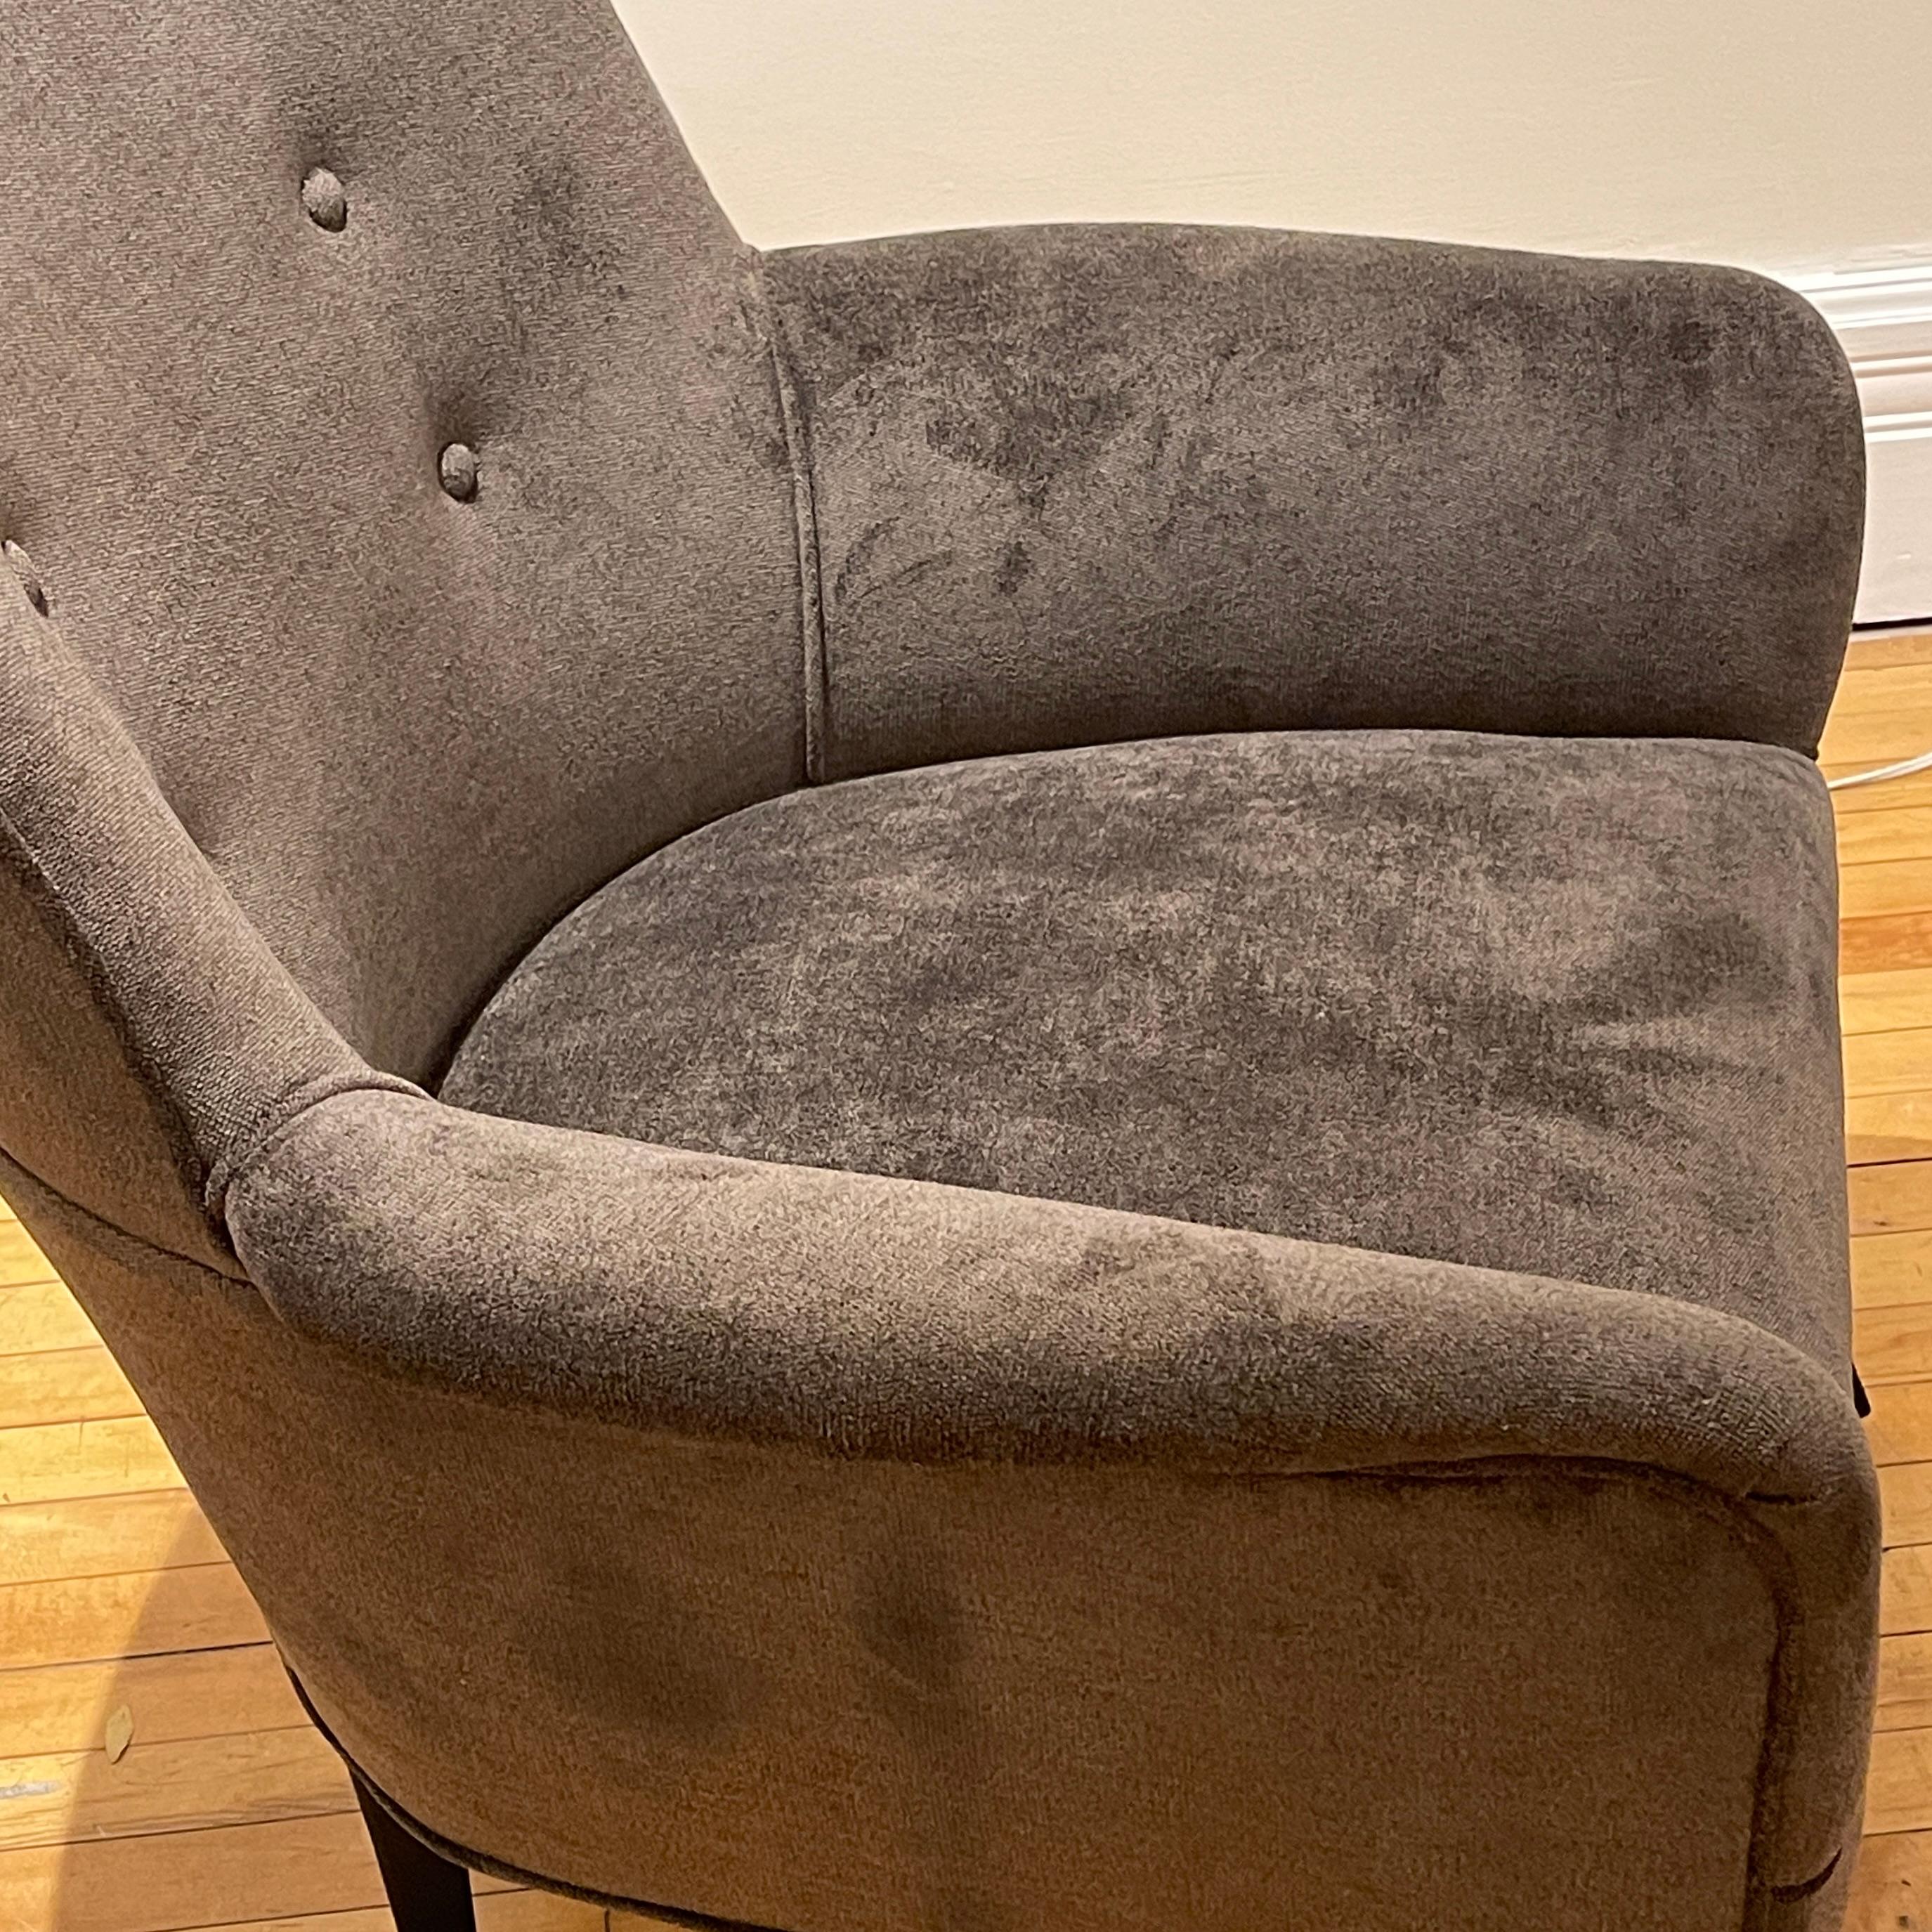 Pair of Sleek Italian Sculptural Midcentury Modern Chairs, New Velvet Upholstery 1